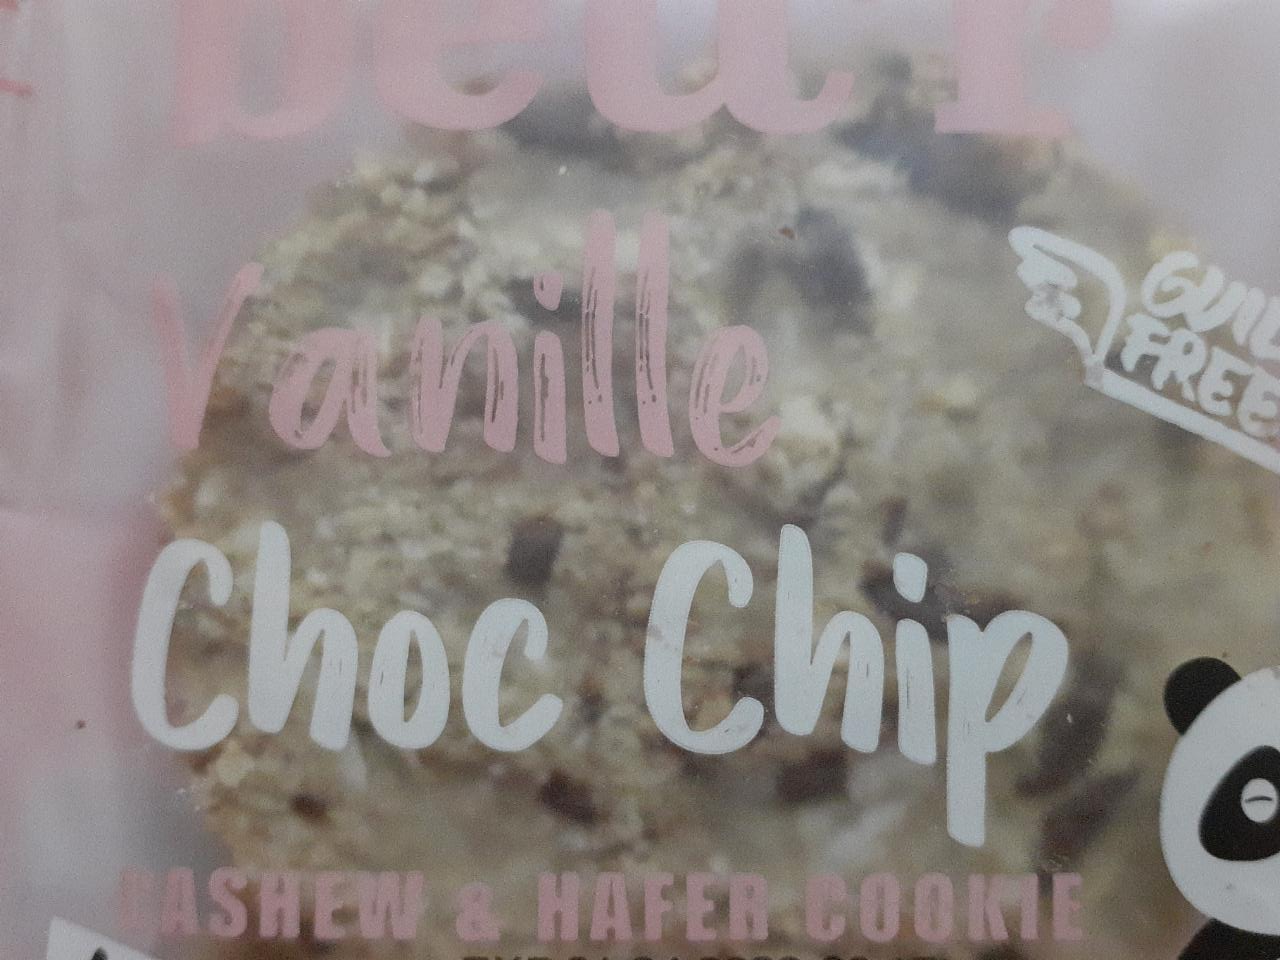 Fotografie - Vanille Choc Chip Cookie Cashew & Hafer Bett'r